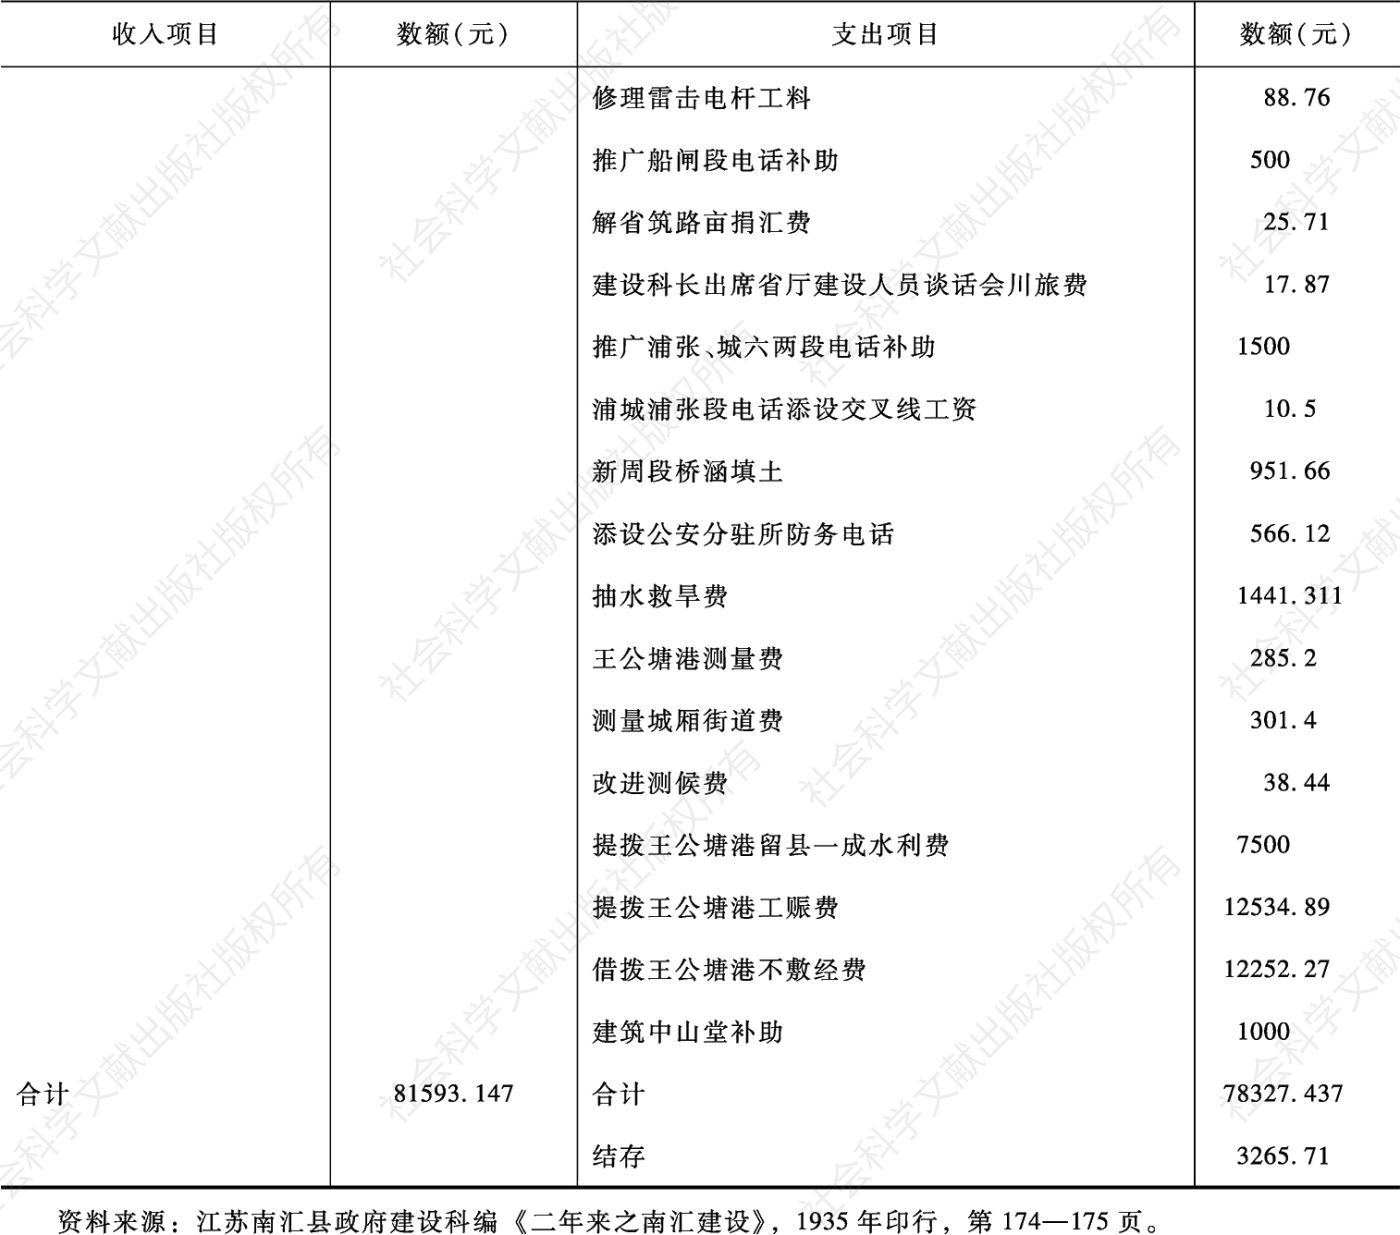 表3-1 南汇县建设经费收支报告（1933年4月—1935年6月）-续表